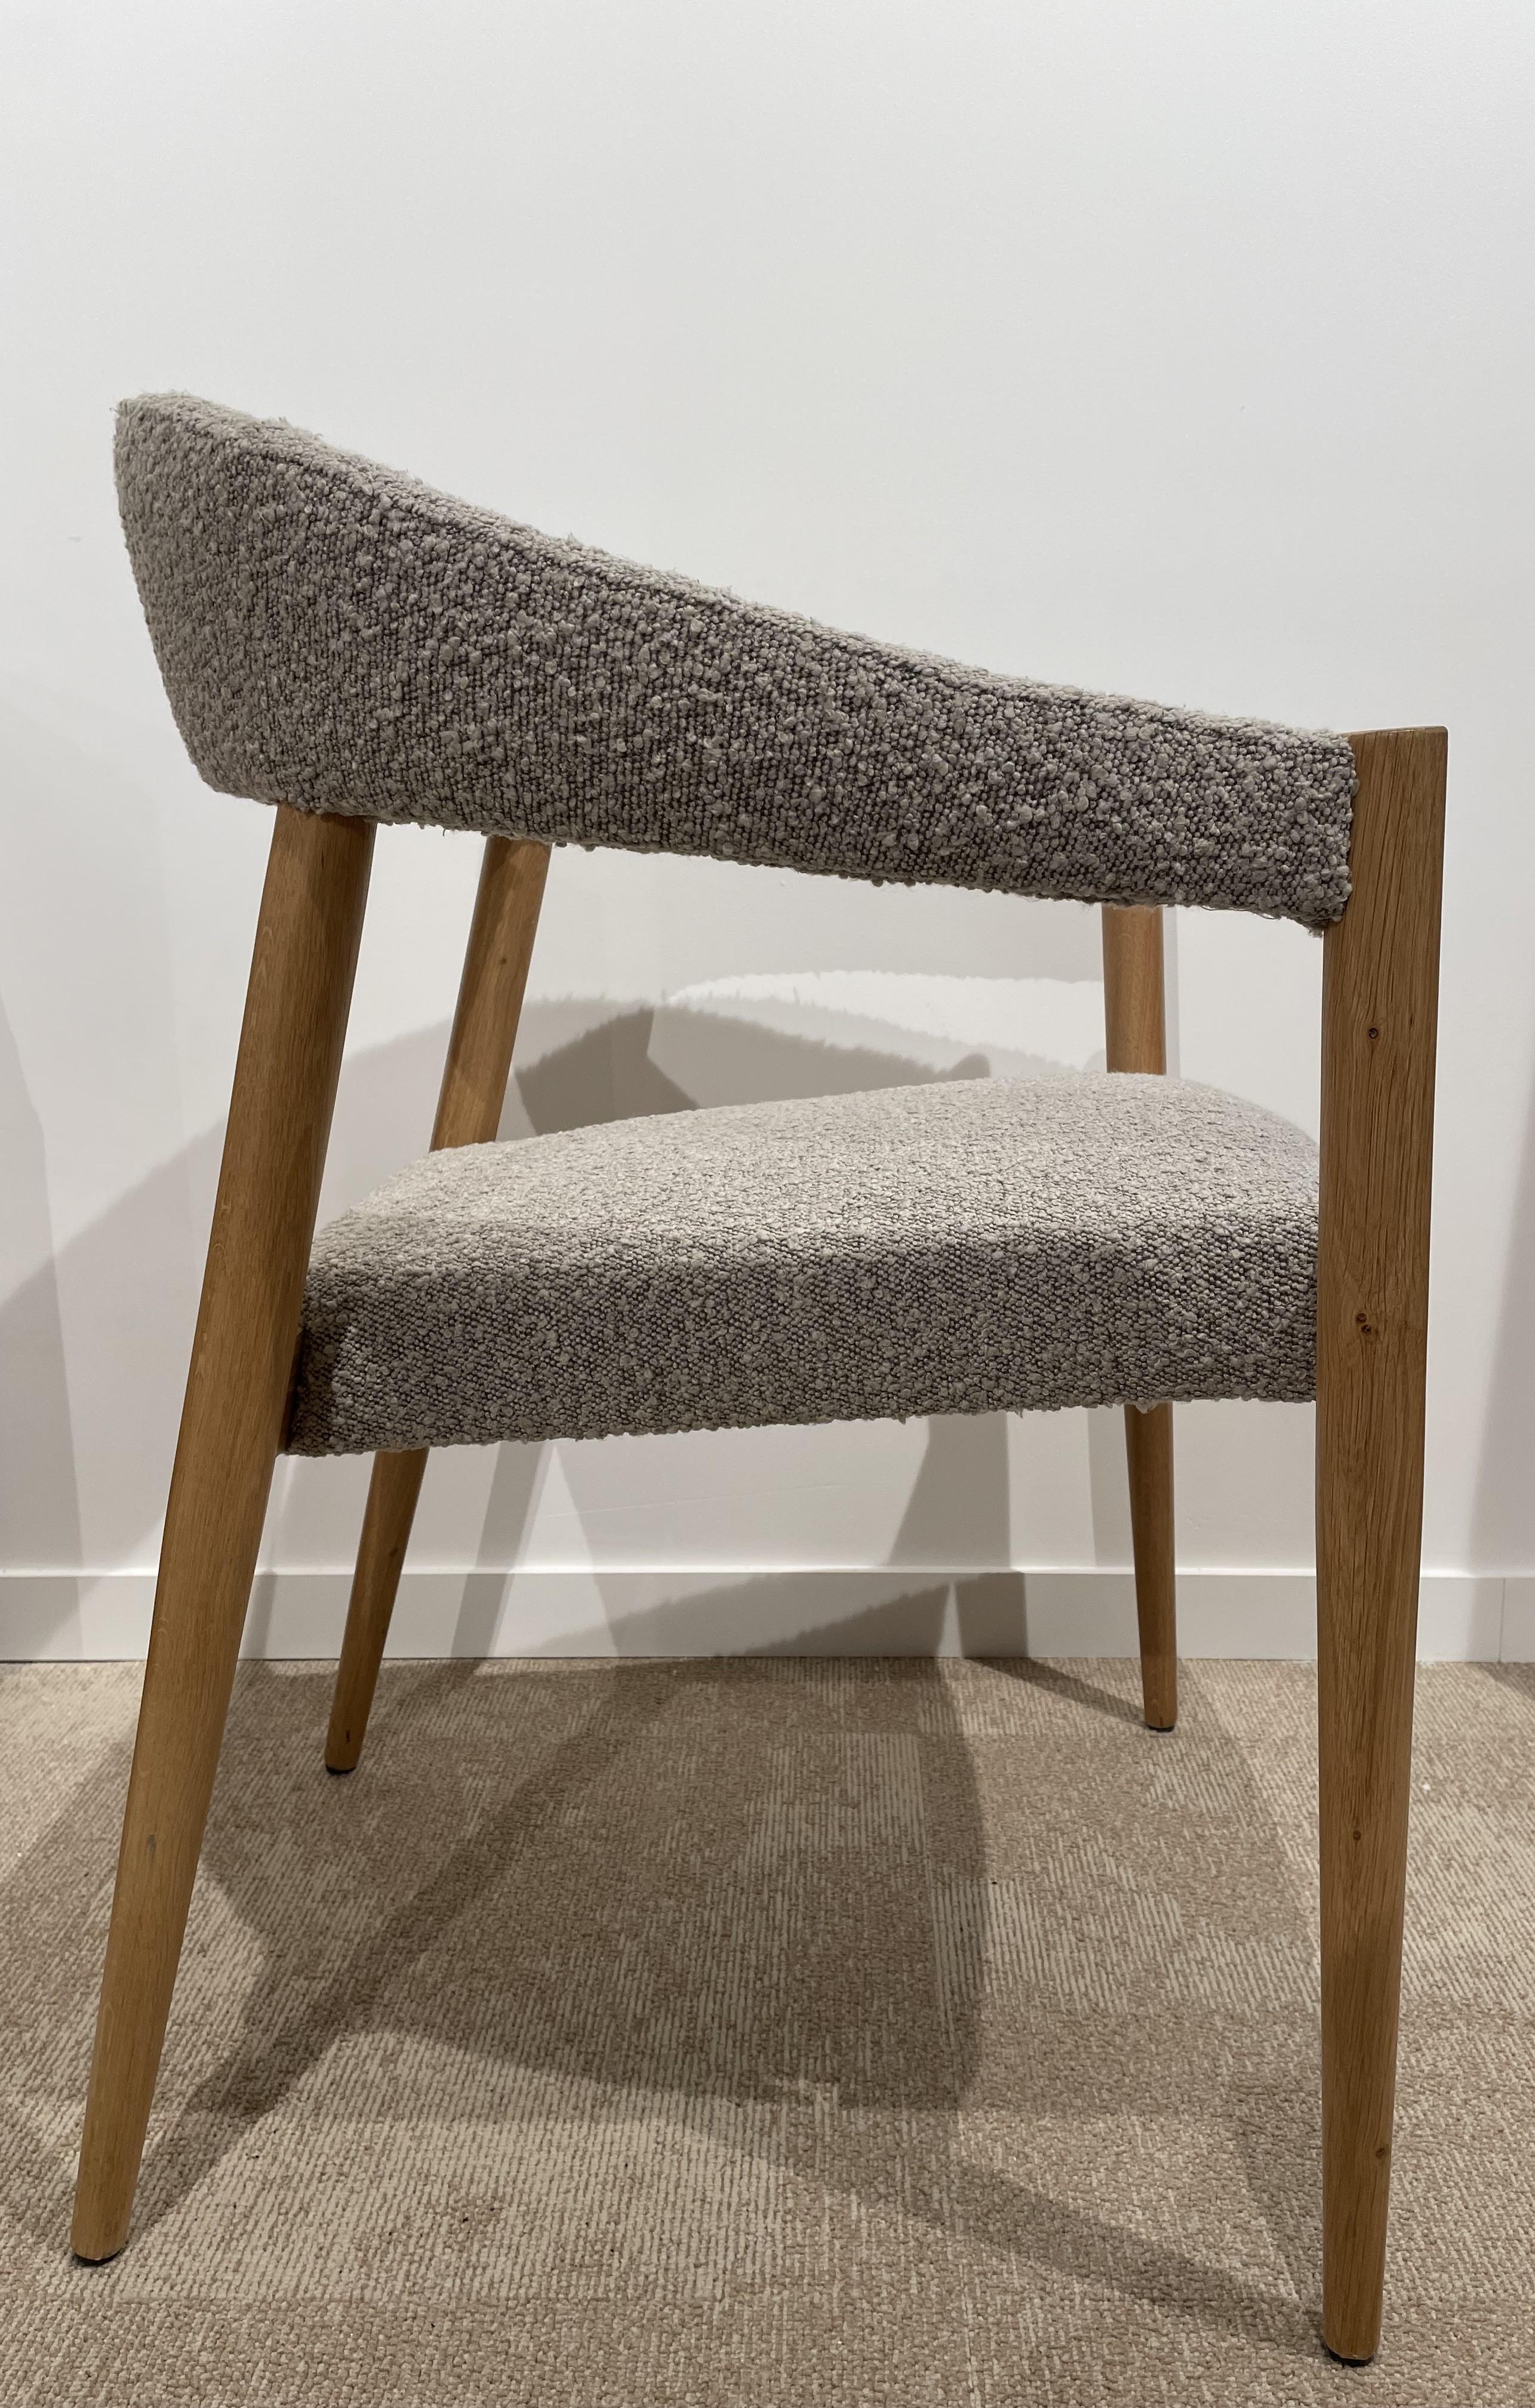 1960 Design/One et chaise de style scandinave en bois et tissu Bouclé gris, autour de la table à manger, elle sera parfaite au bureau aussi !
  